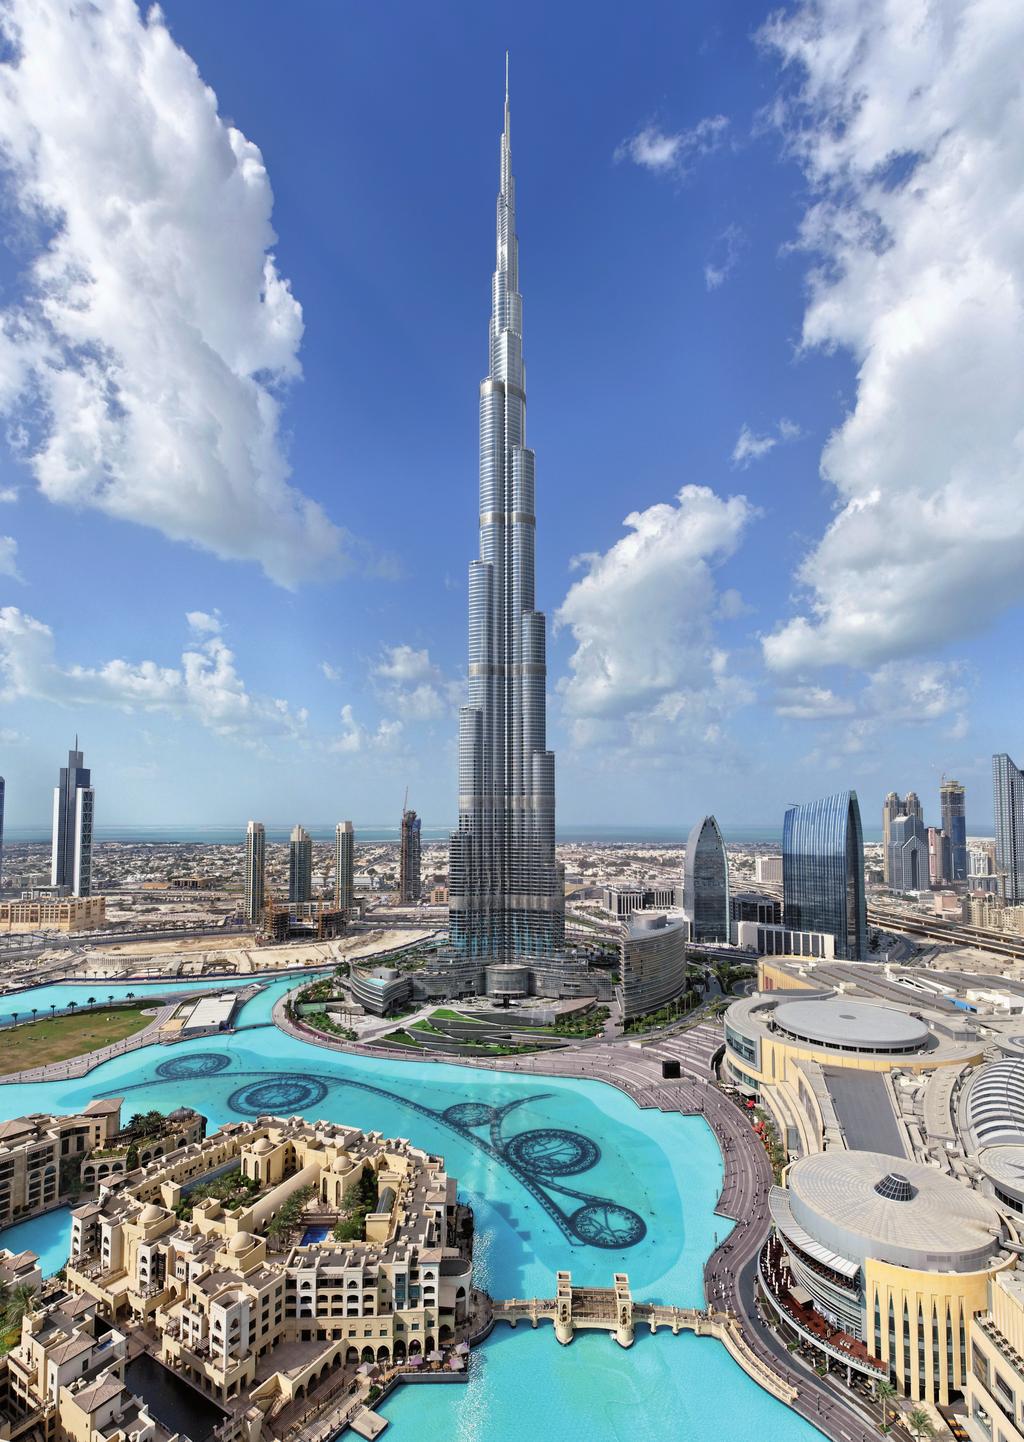 Hoval at Burj Khalifa,